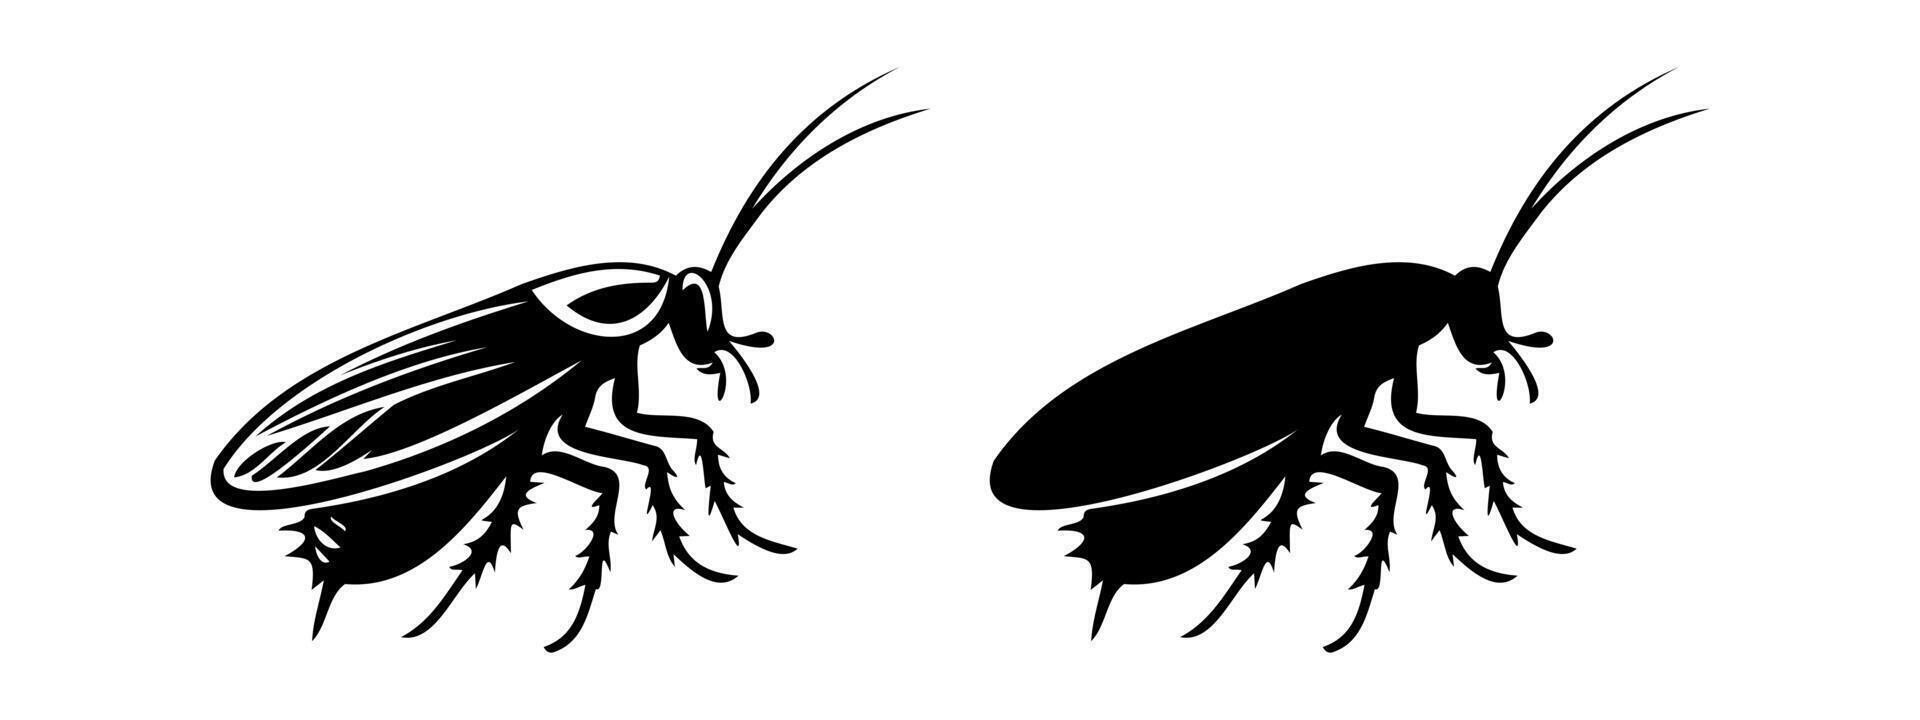 kackerlacka svart silhuetter, detaljerad och fast. insekt illustration uppsättning. isolerat på vit bakgrund begrepp av skadedjur kontrollera, angrepp, Hem hygien. för design, skriva ut, pedagogisk material vektor